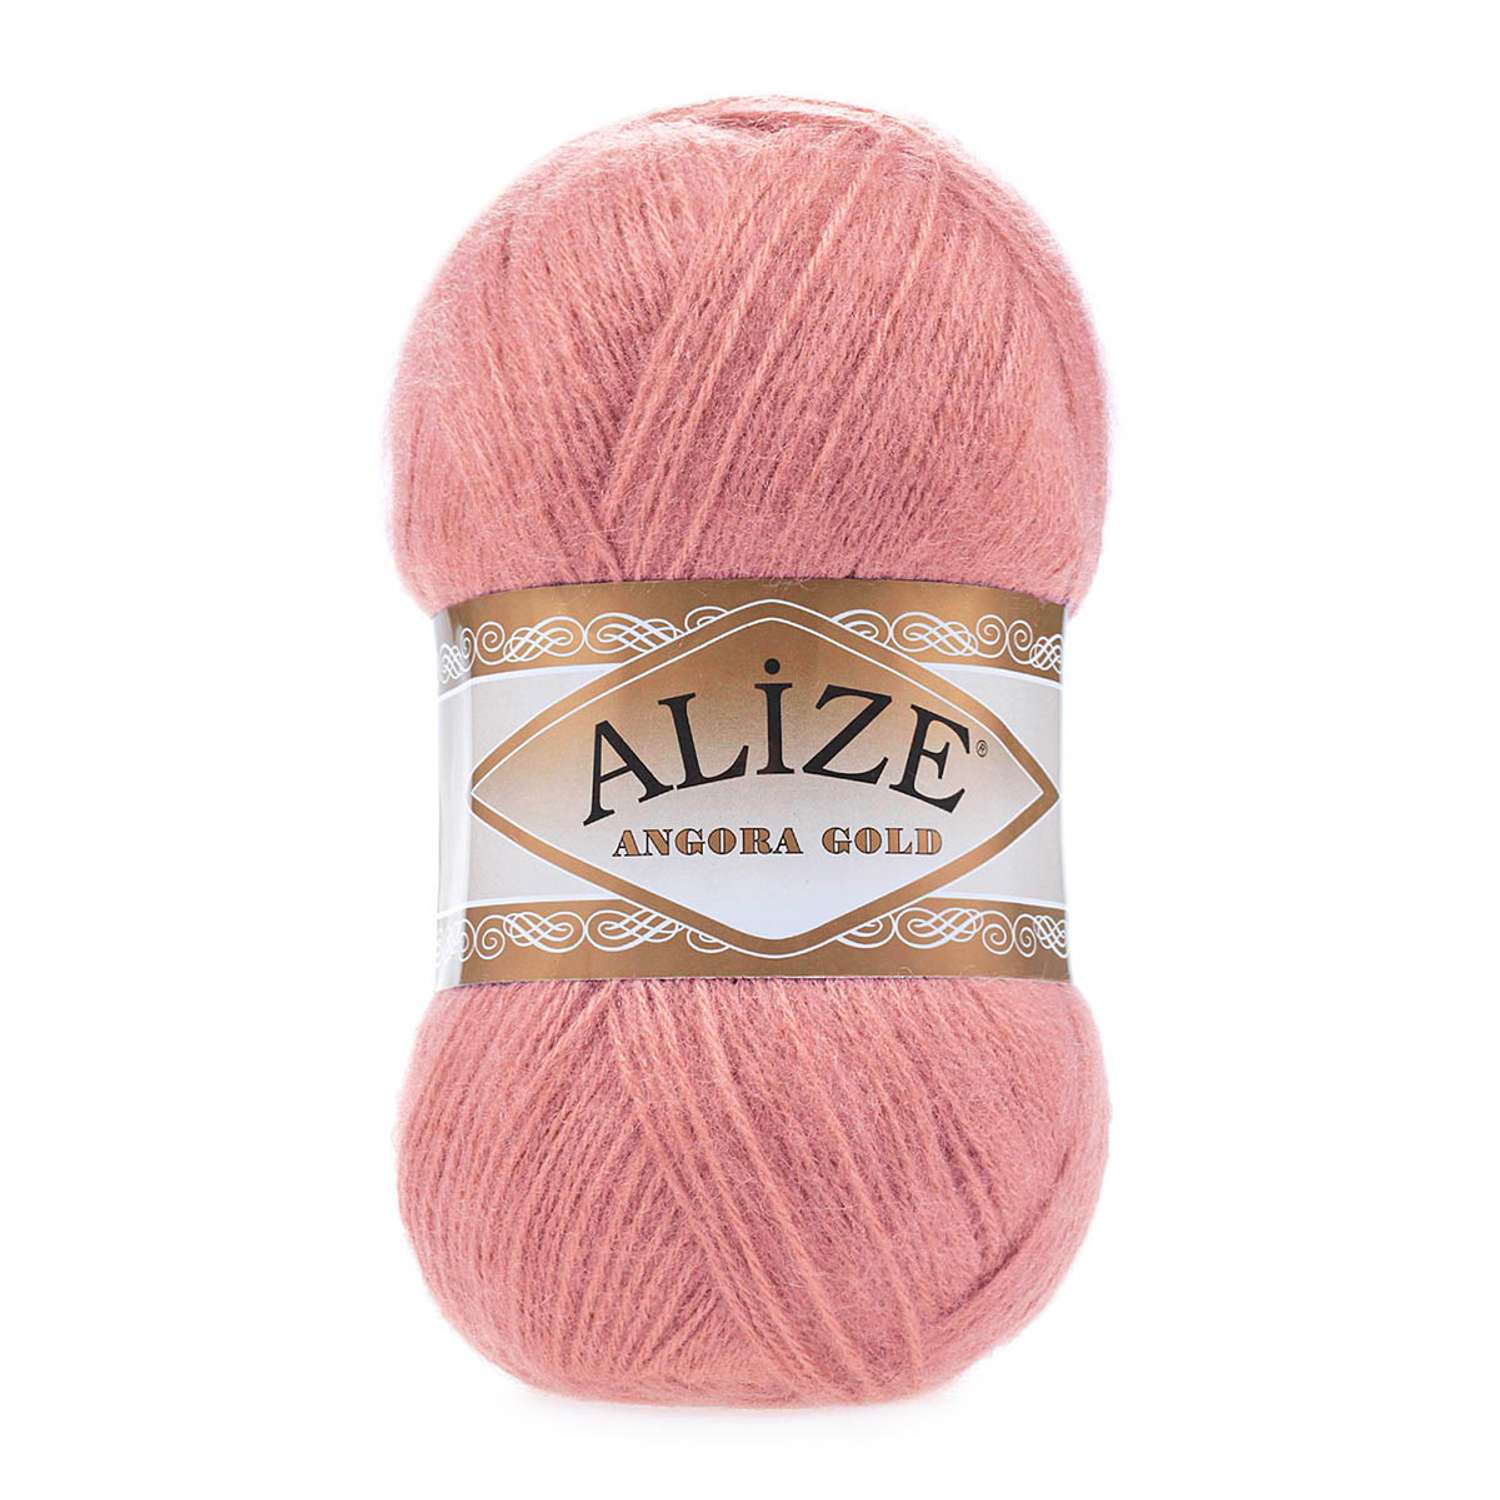 Пряжа Alize мягкая теплая для шарфов кардиганов Angora Gold 100 гр 550 м 5 мотков 144 старо-розовый - фото 6